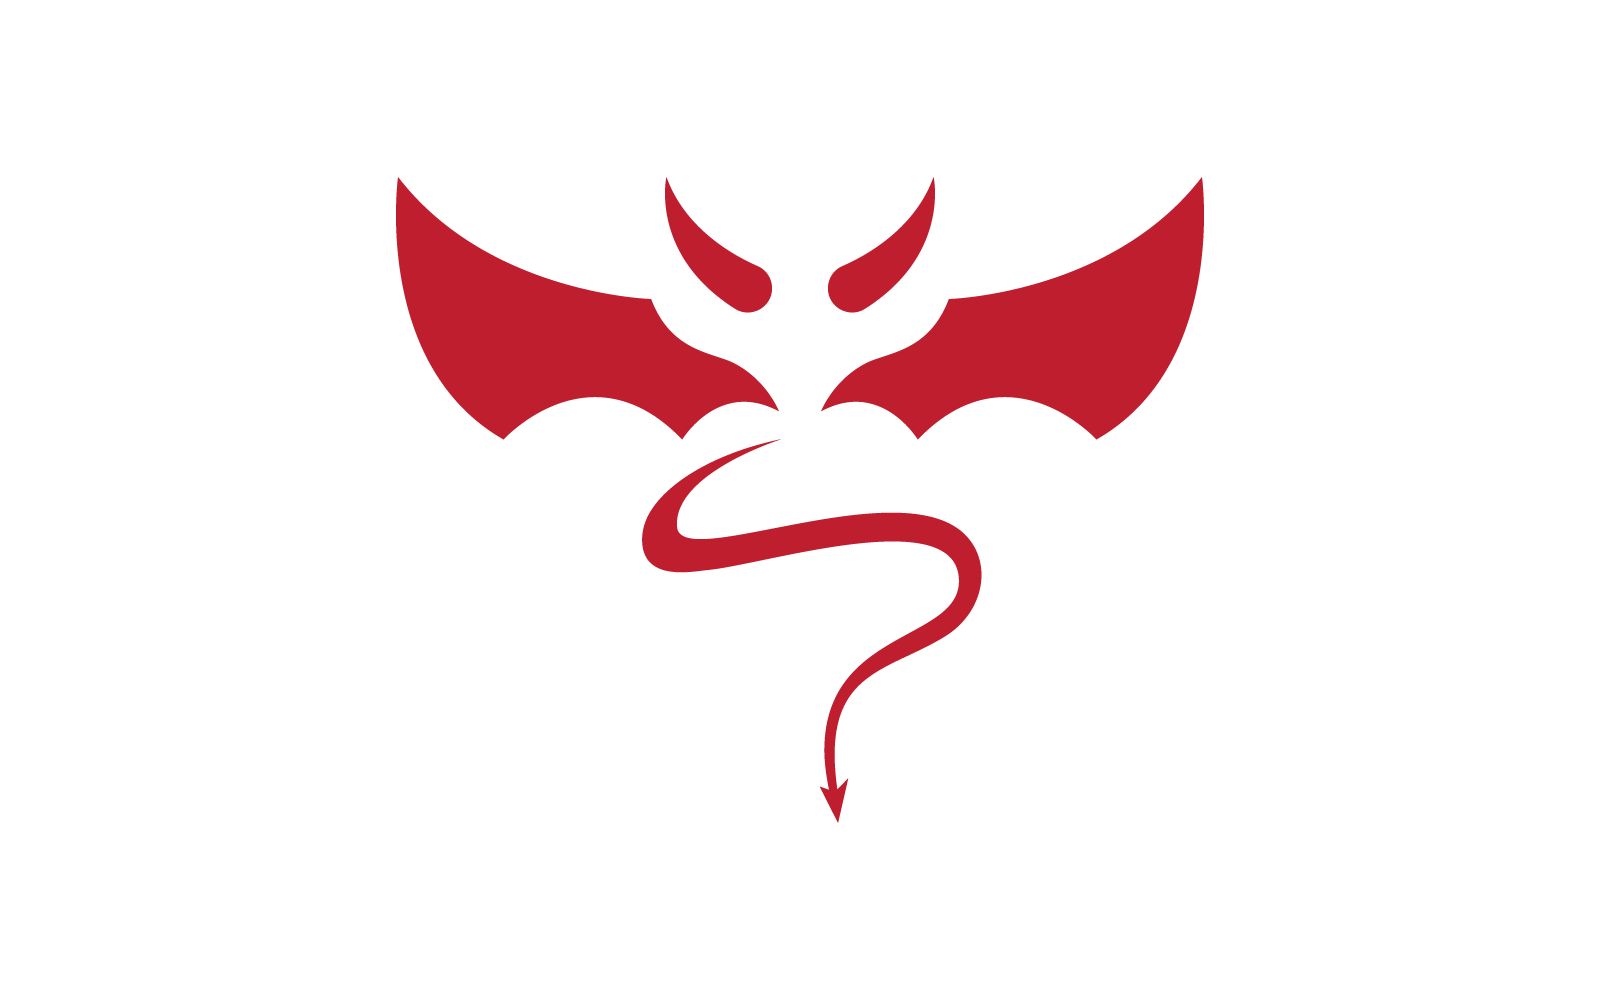 Devil logo ilustration vector flat design